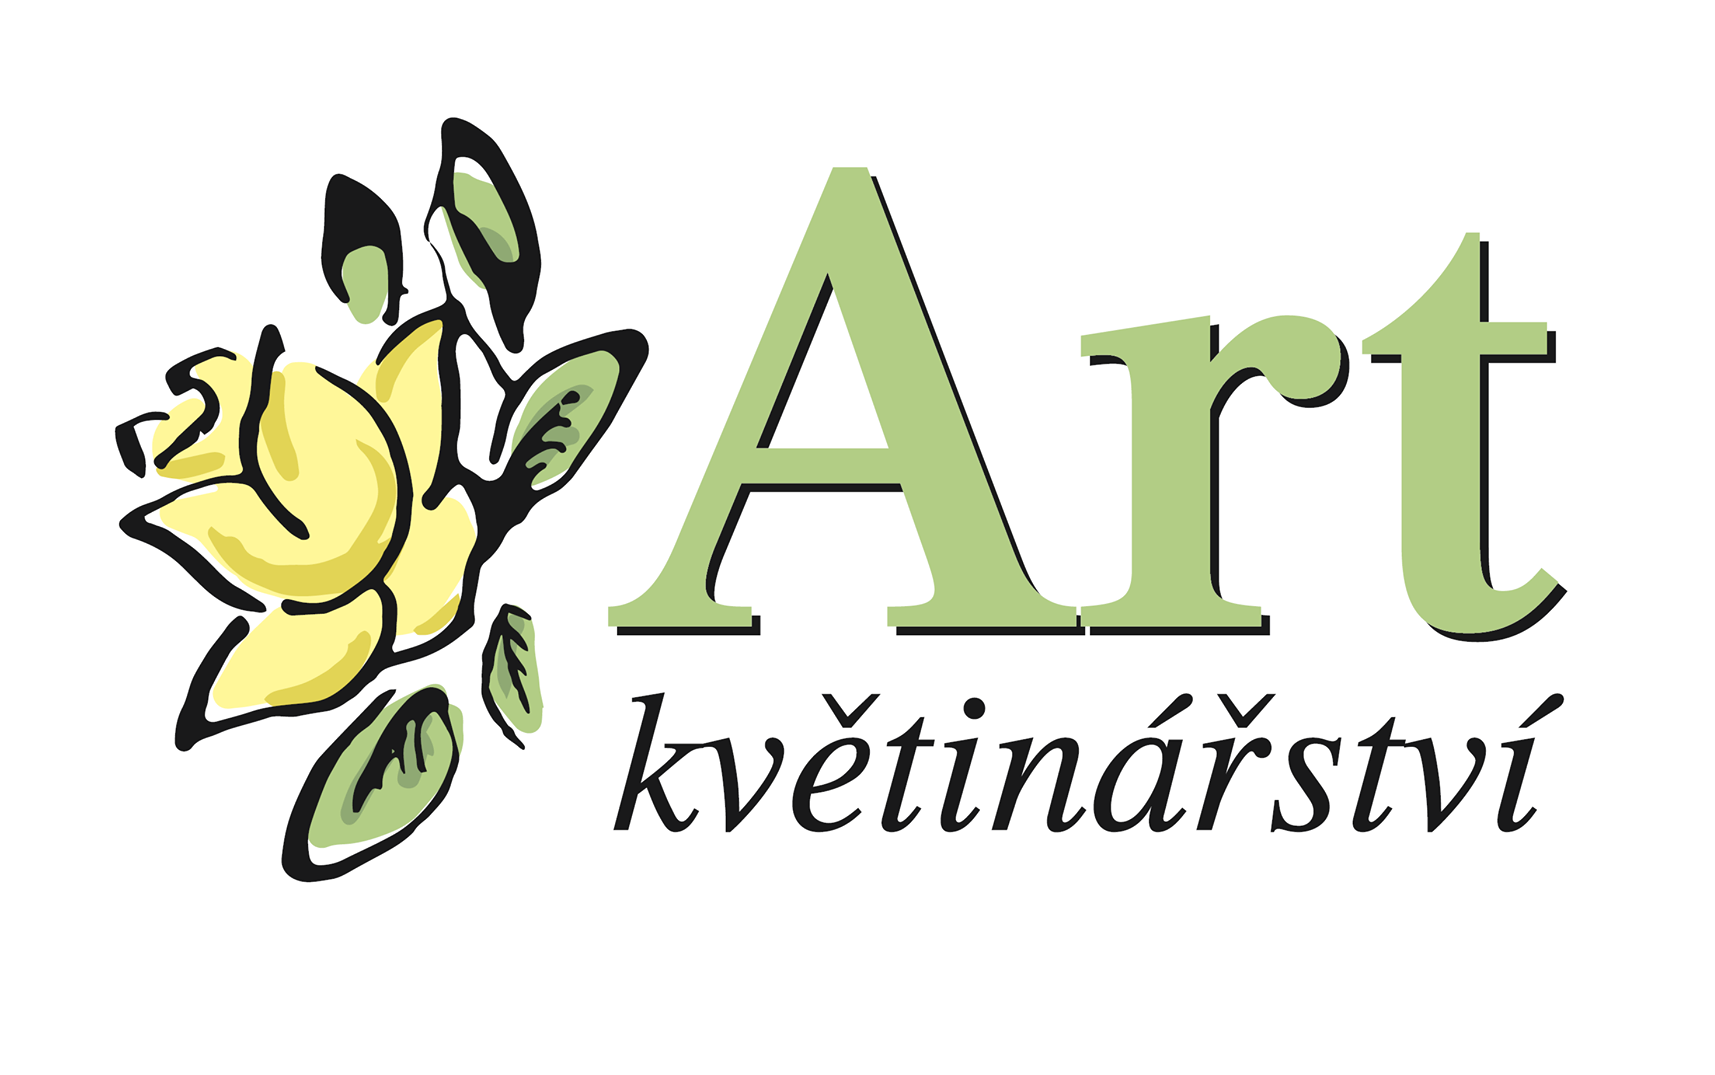 kvetinarstvi-art-e1618233856127